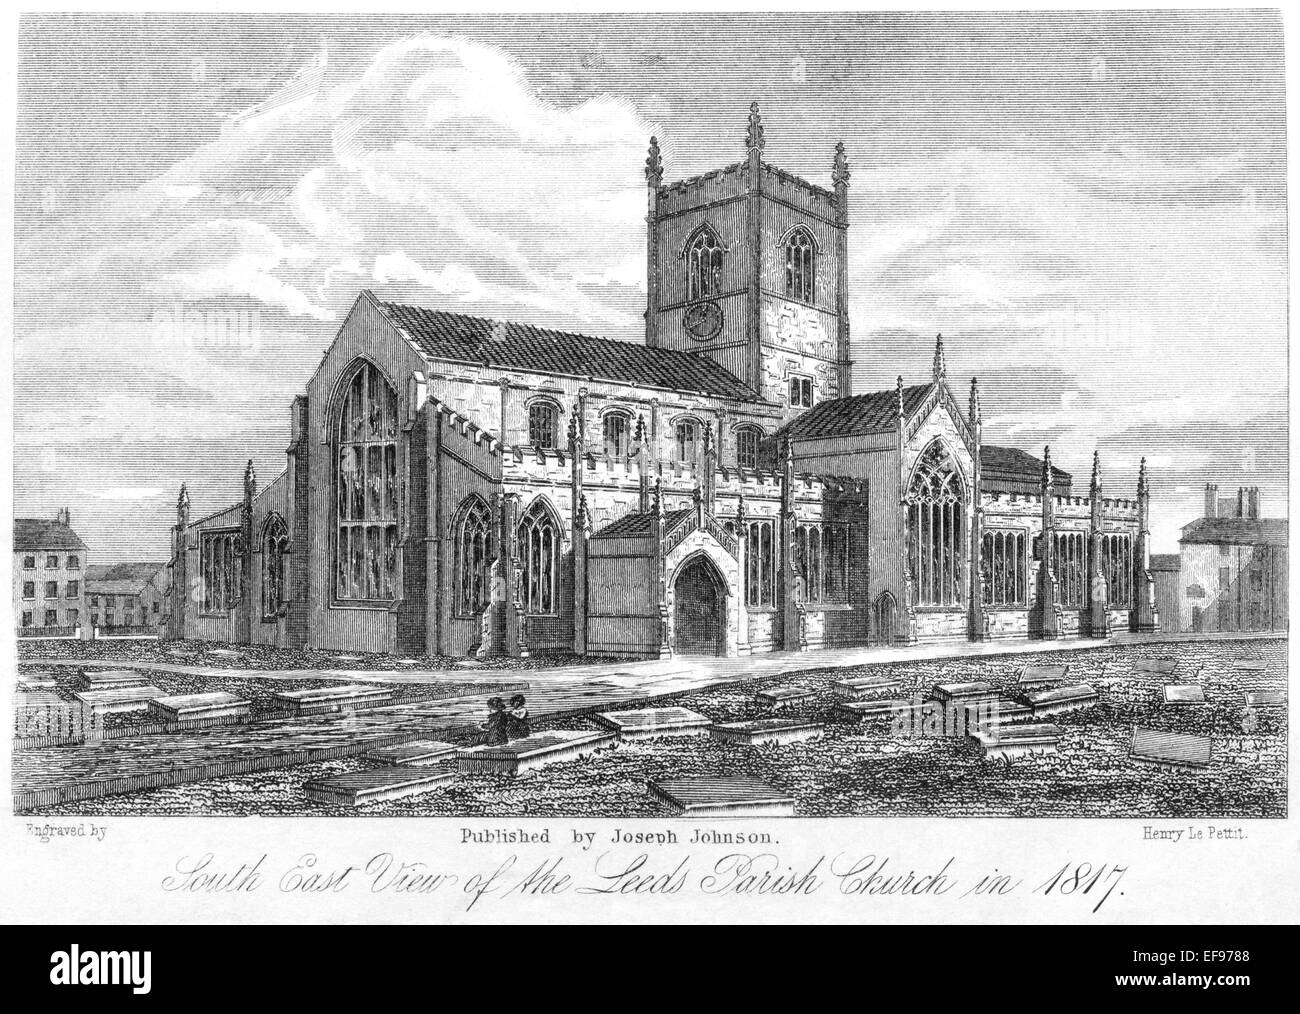 Ein Stich einer Südost-Ansicht der Leeds Parish Church im Jahr 1817, der in hoher Auflösung von einem 1861 gedruckten Buch gescannt wurde. Für urheberrechtlich frei gehalten. Stockfoto